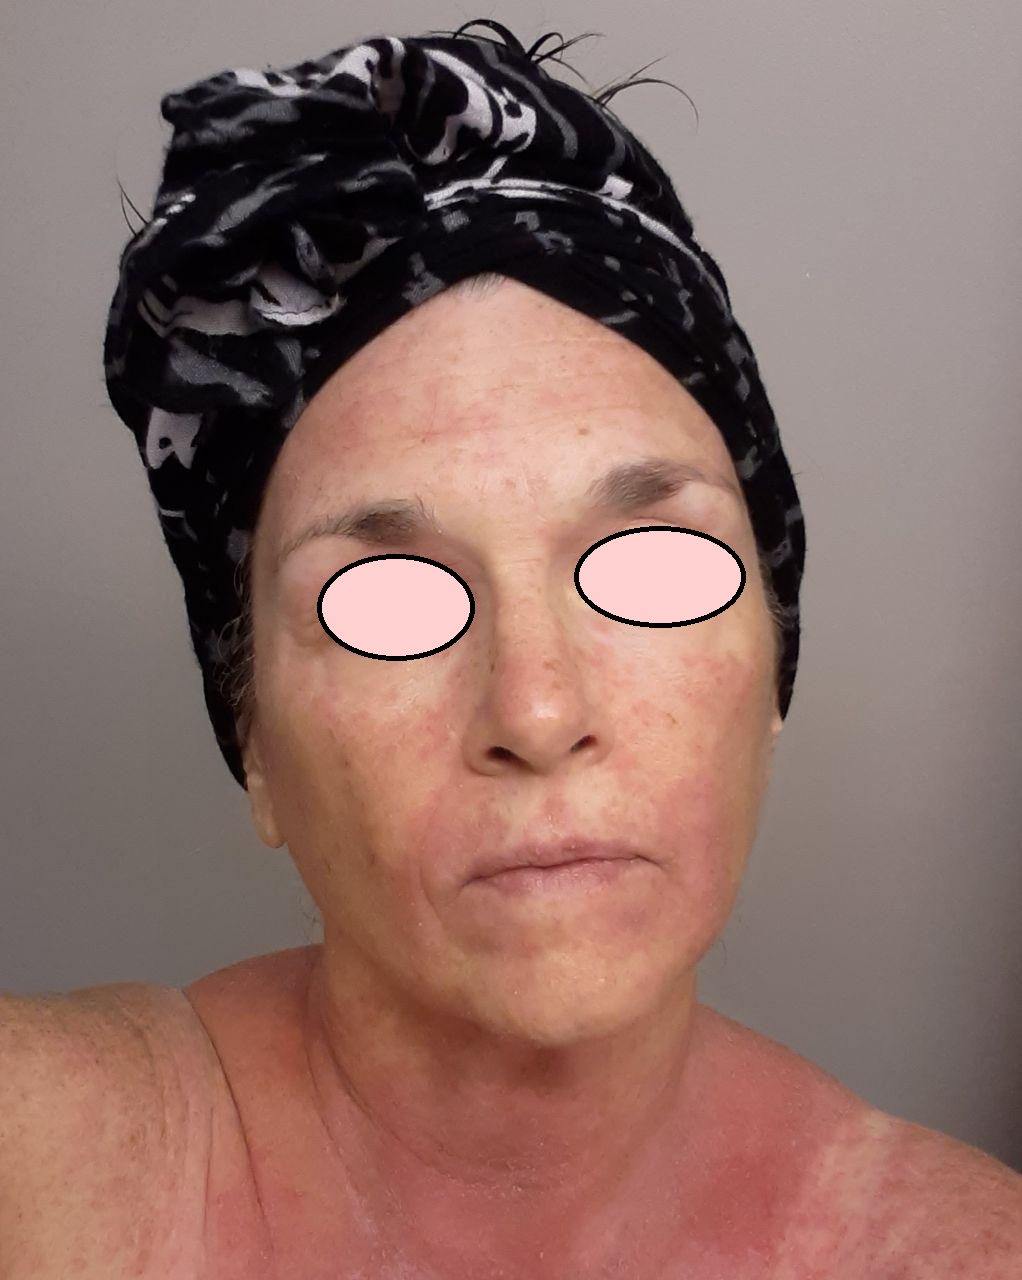 woman with eczema